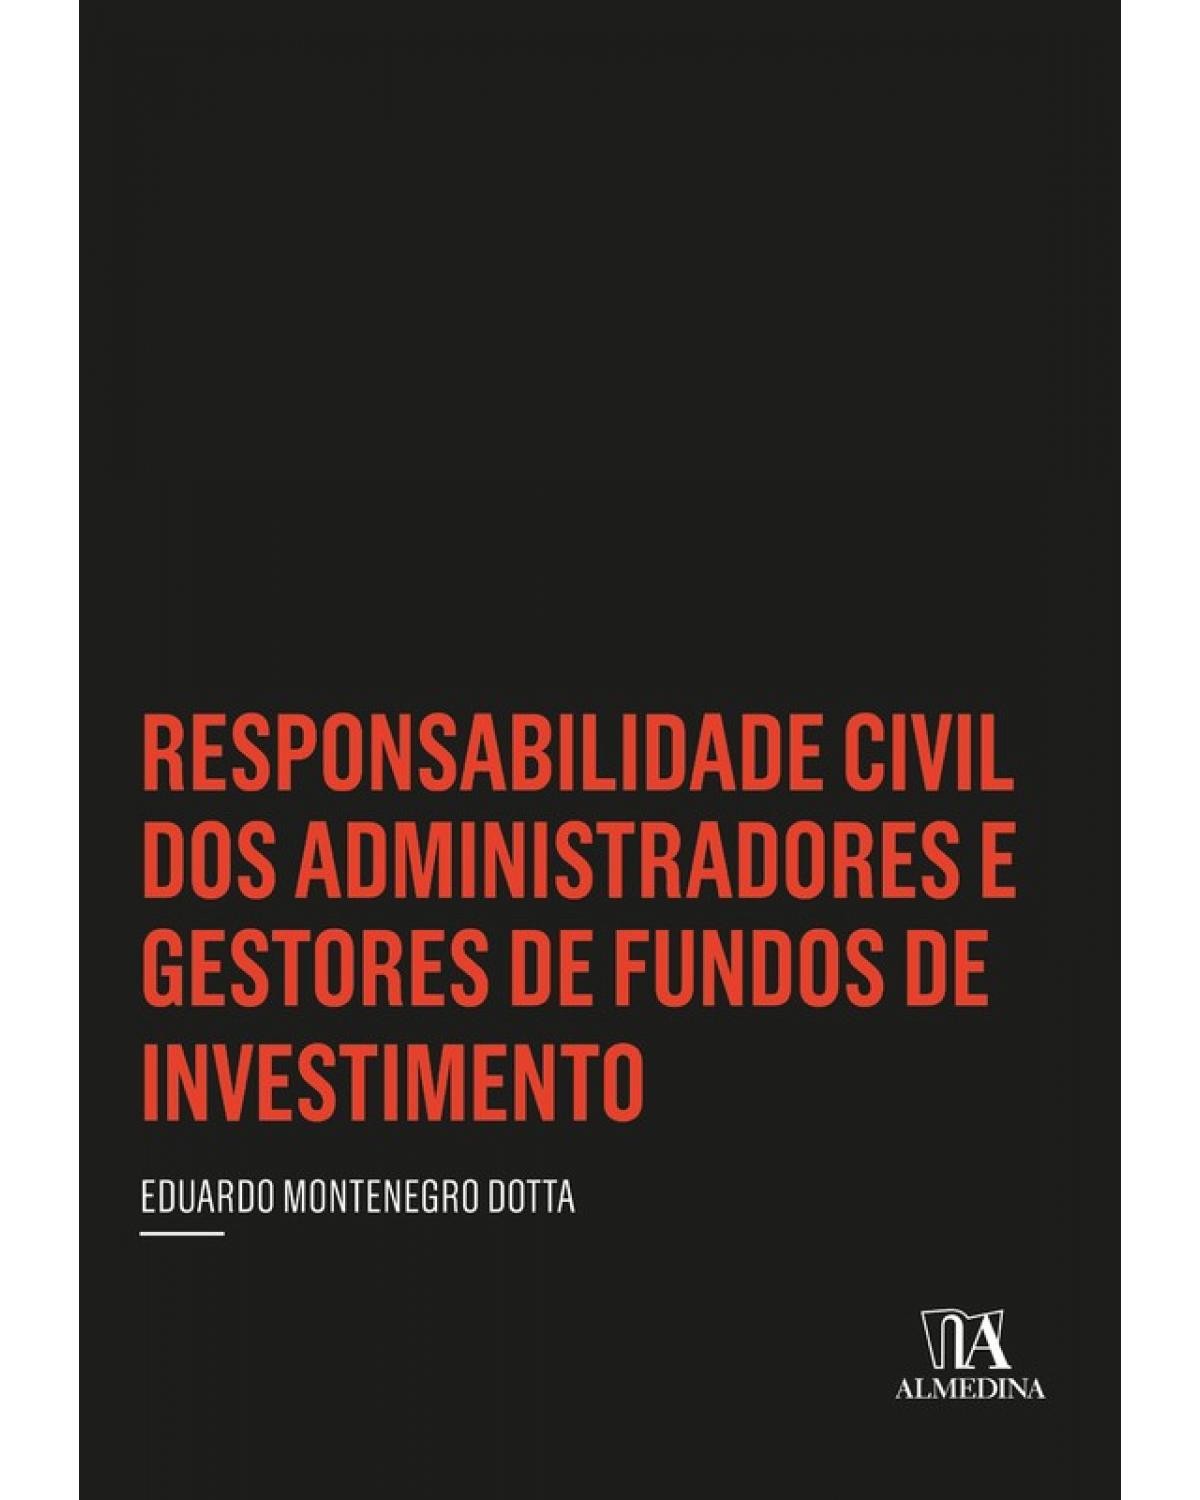 Responsabilidade Civil dos Administradores e Gestores de Fundos de Investimento